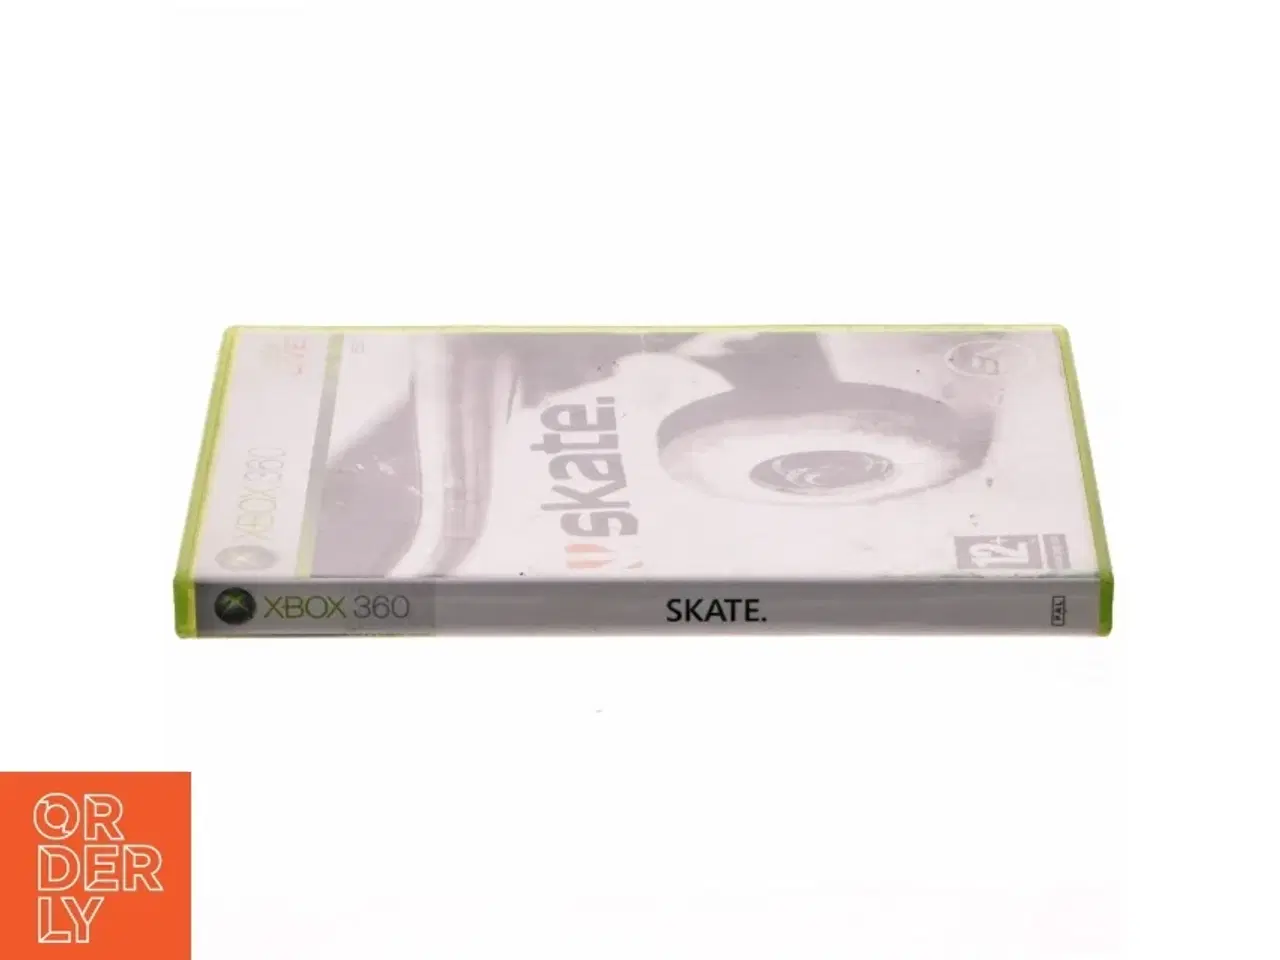 Billede 2 - Skate videospil til Xbox 360 fra Electronic Arts